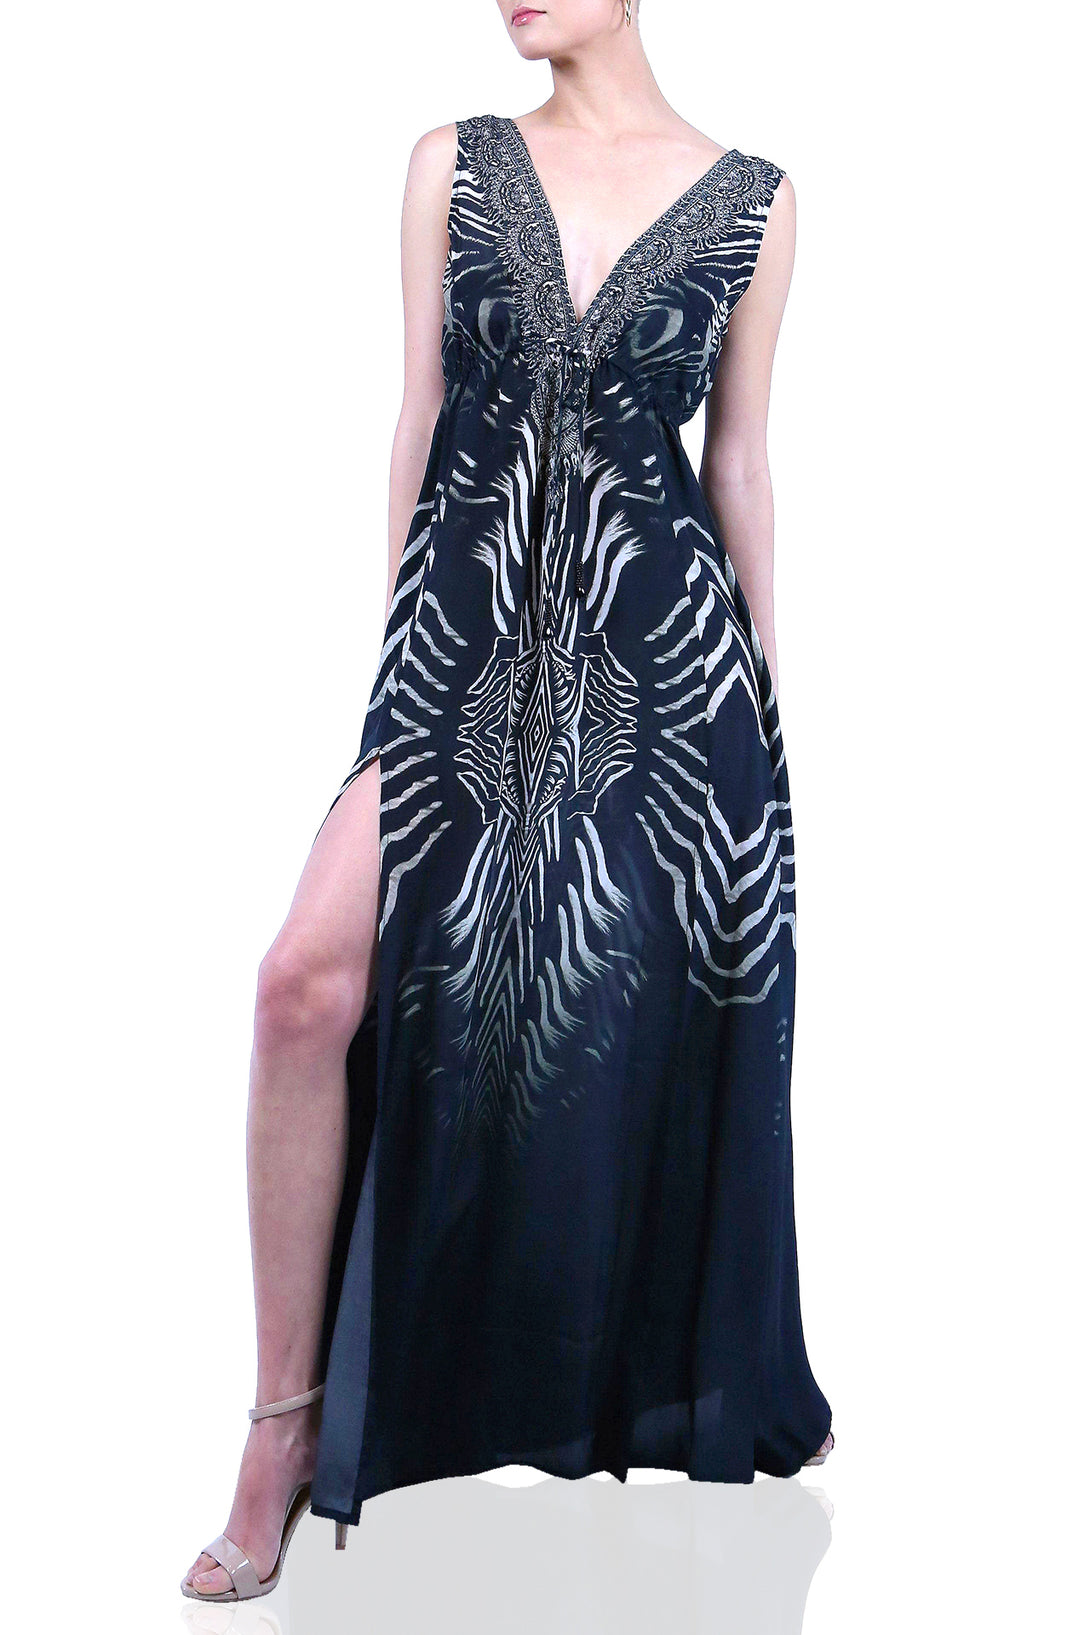  black backless maxi dress, summer maxi dresses for women, plunging v neck formal dress,